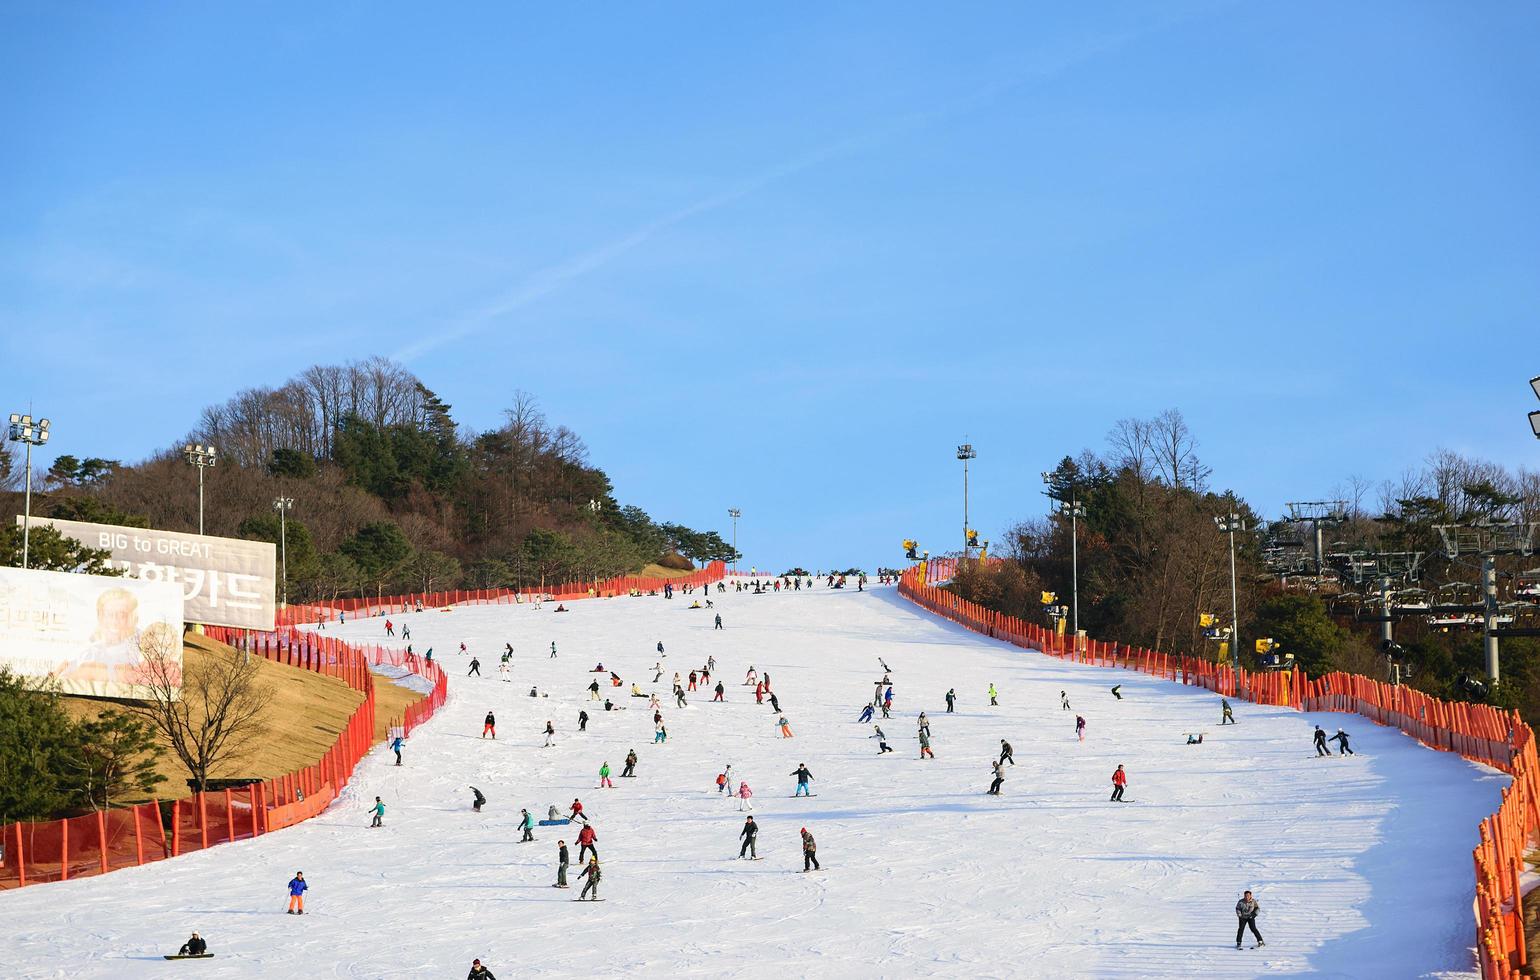 gangwon-do, Korea, 4 januari 2016 - Daemyung Vivaldi Park skidort foto